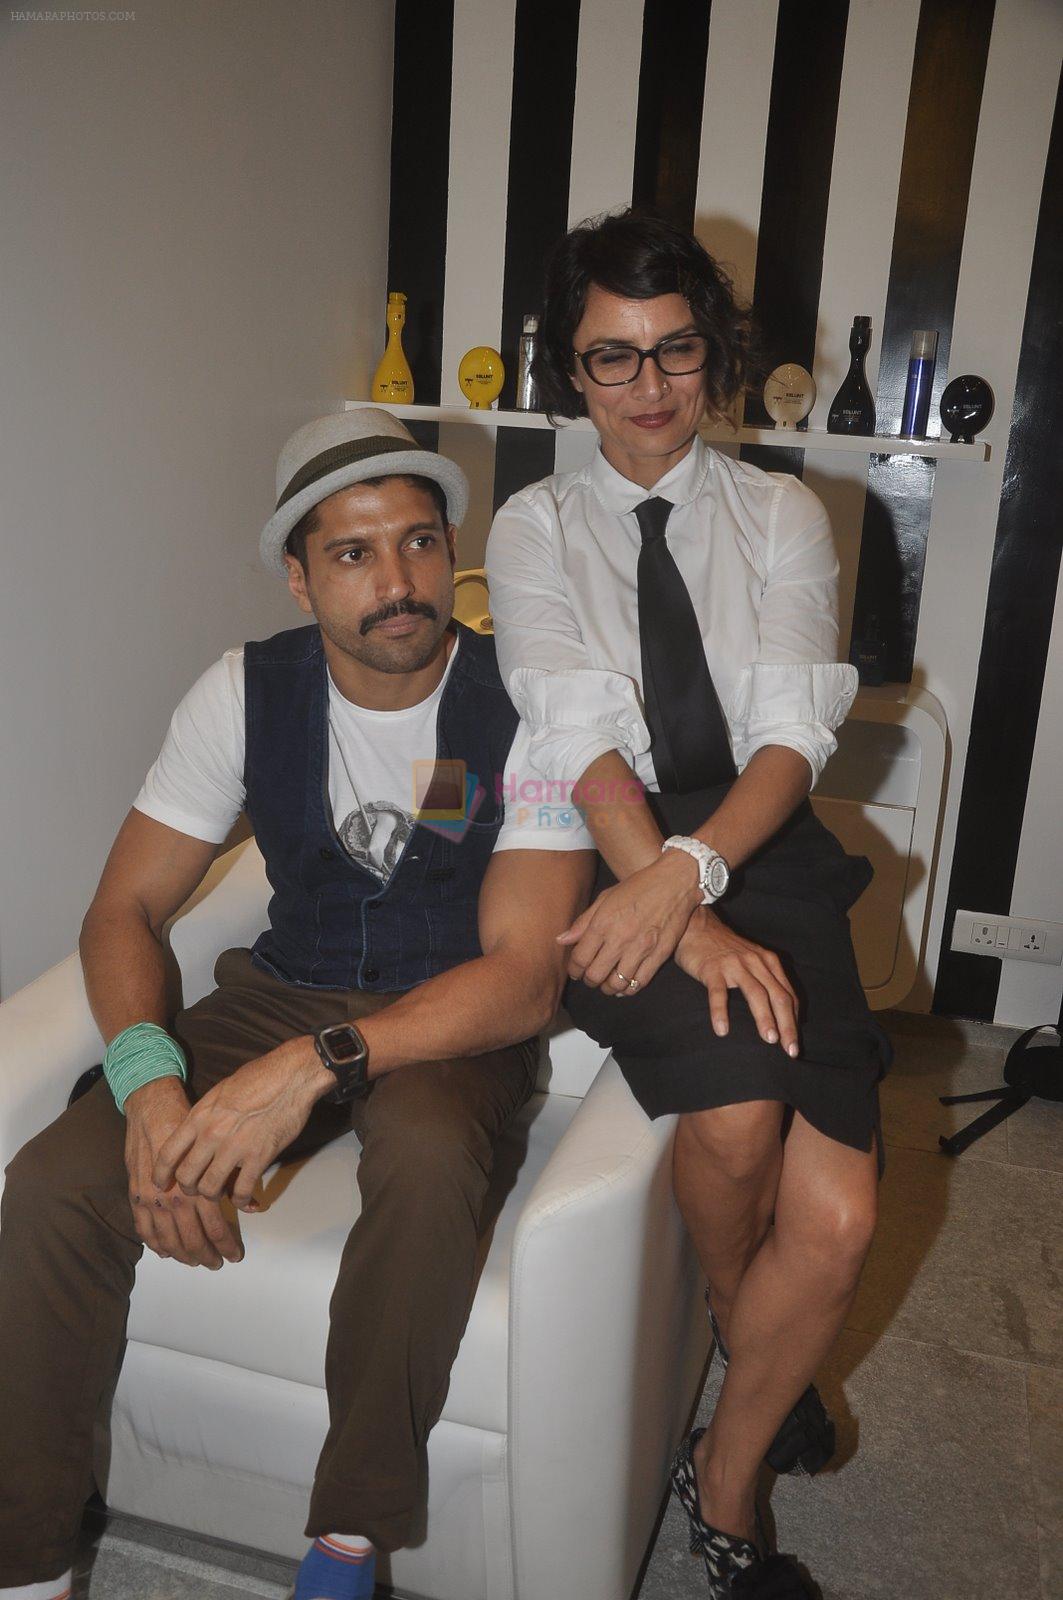 Farhan Akhtar, Adhuna Akhtar at the launch of BBlunt in R City Mall on 22nd Nov 2014